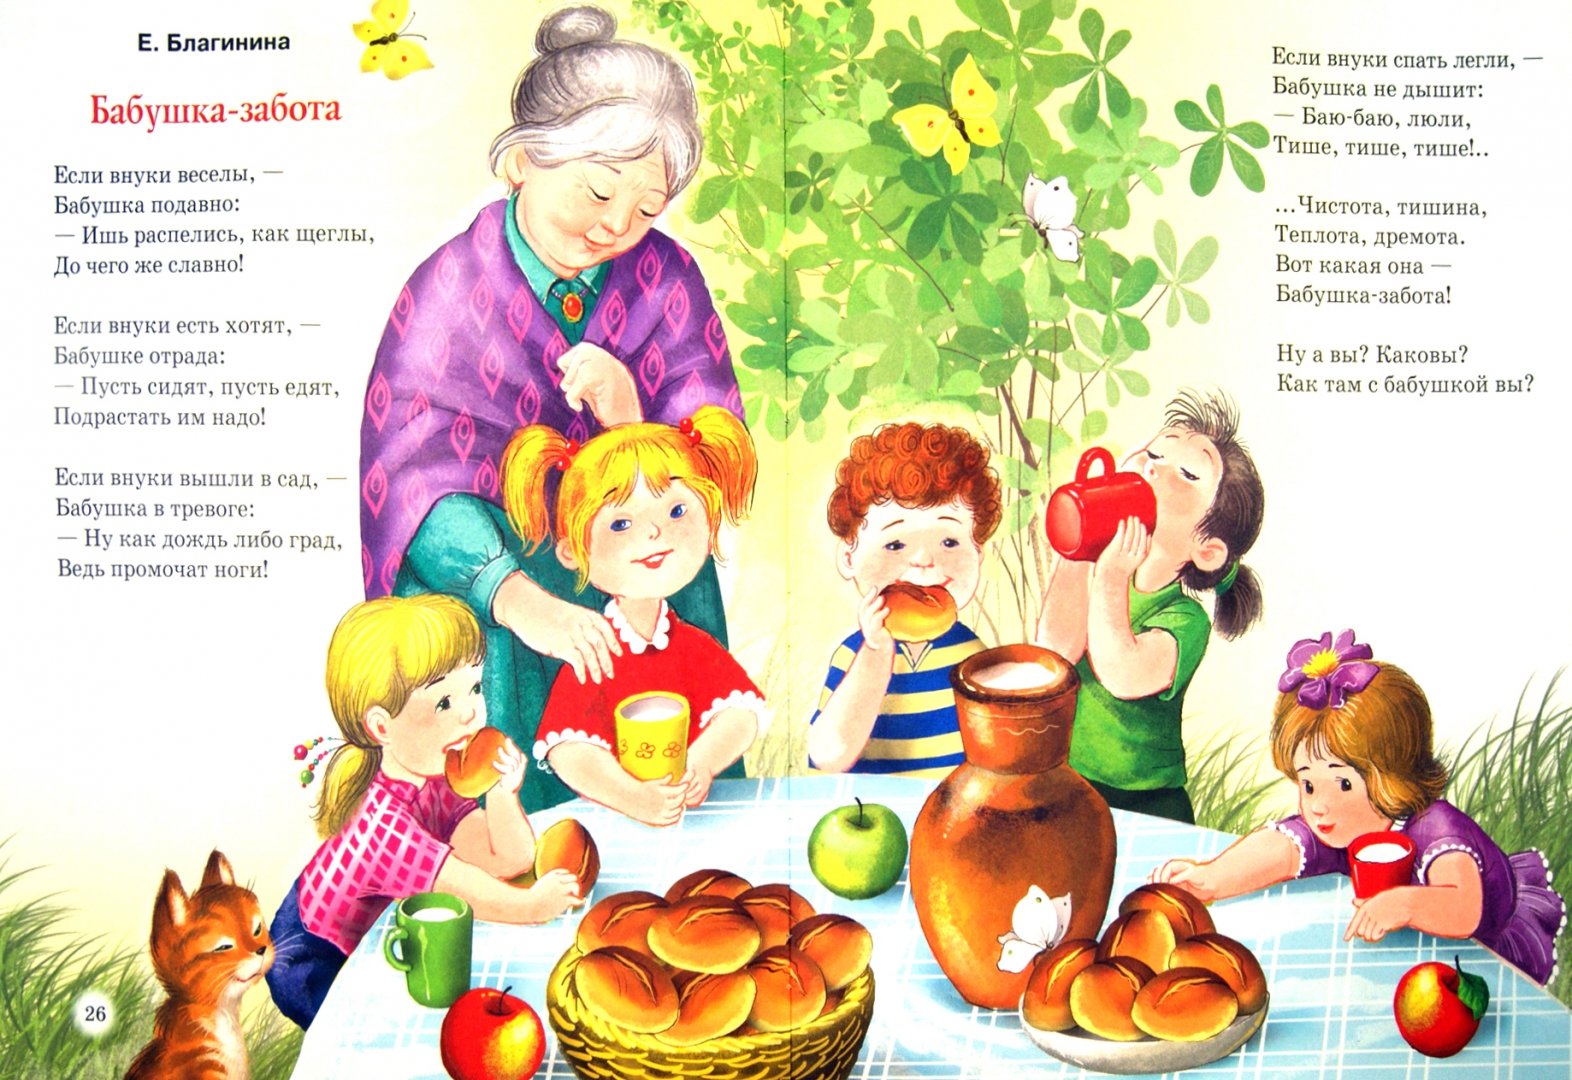 Рассказы про мам и бабушек. Стихи Благининой бабушка забота. Стих Благинина бабушка забота. Стихотворение про бабушку для детей.